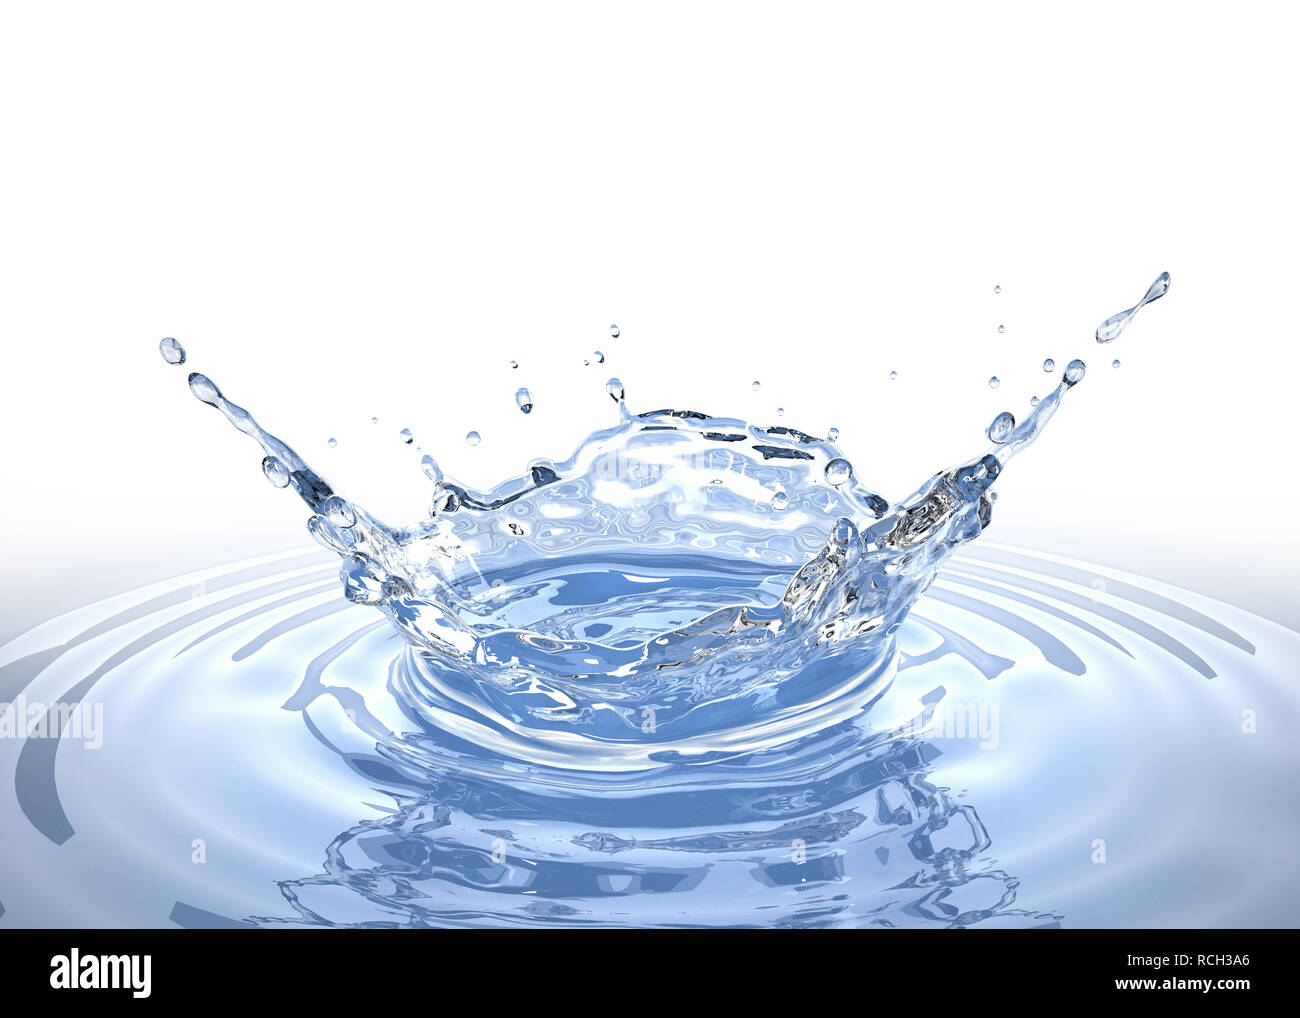 Acqua splash di corona in una piscina di acqua, con ondulazioni di circolare intorno a. Una prospettiva aerea isolato su sfondo bianco. Percorso di clipping incluso. Foto Stock